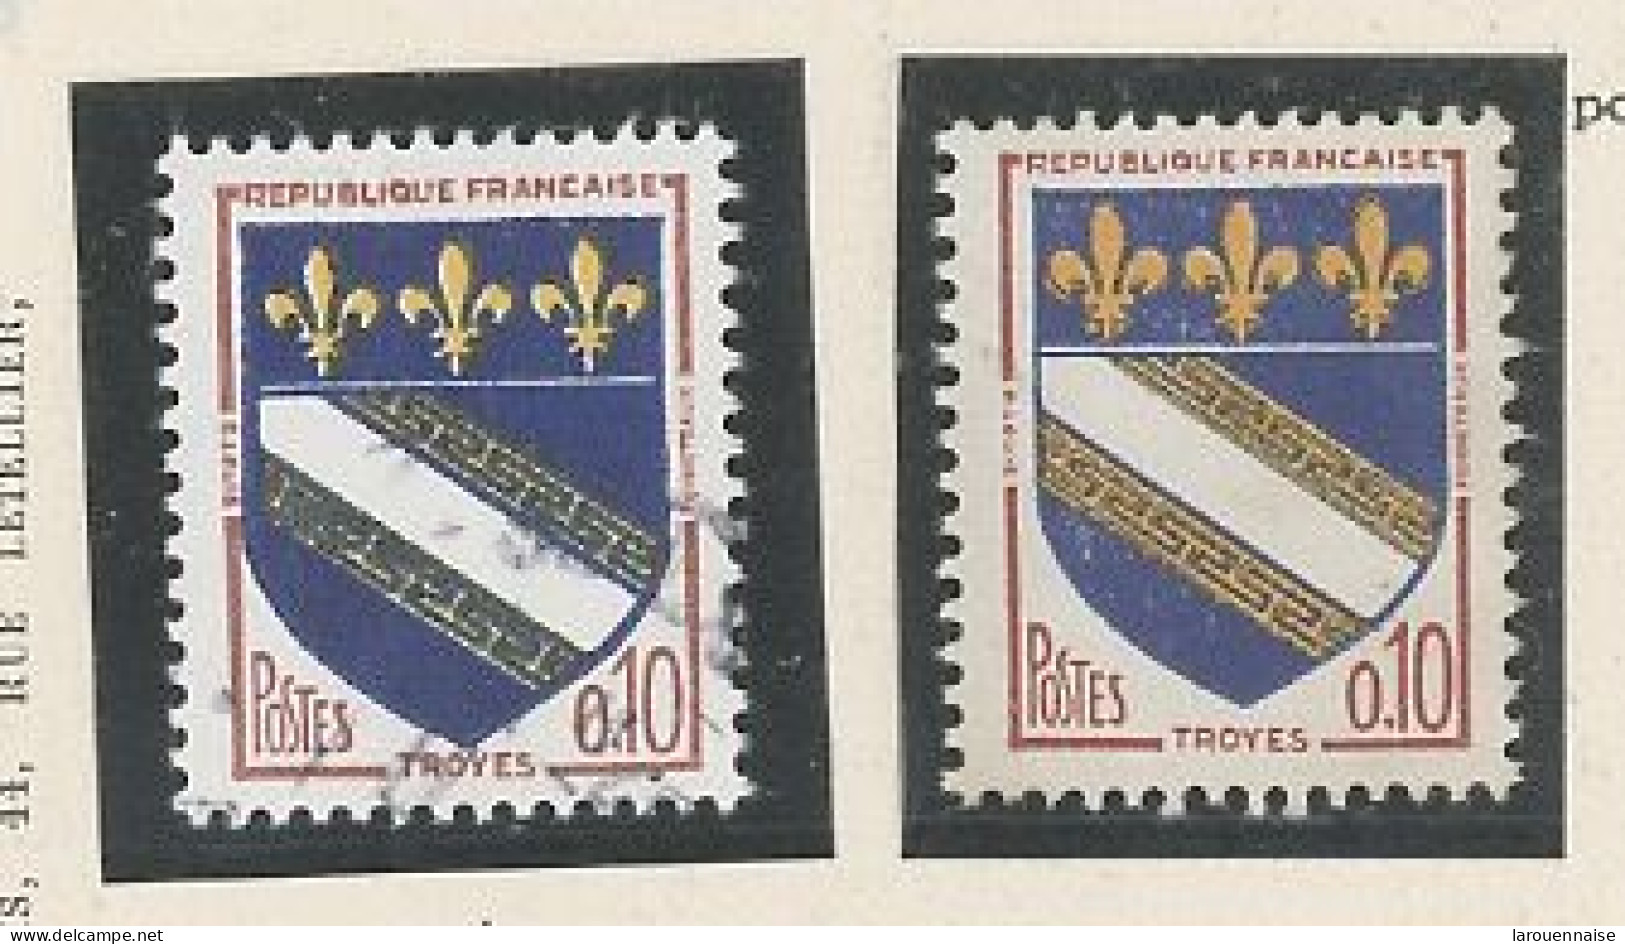 VARIÉTÉ- N°1353 - Obl -COULEUR OR ABSENTE DANS LES GRÈQUES (Diagonales) - Used Stamps